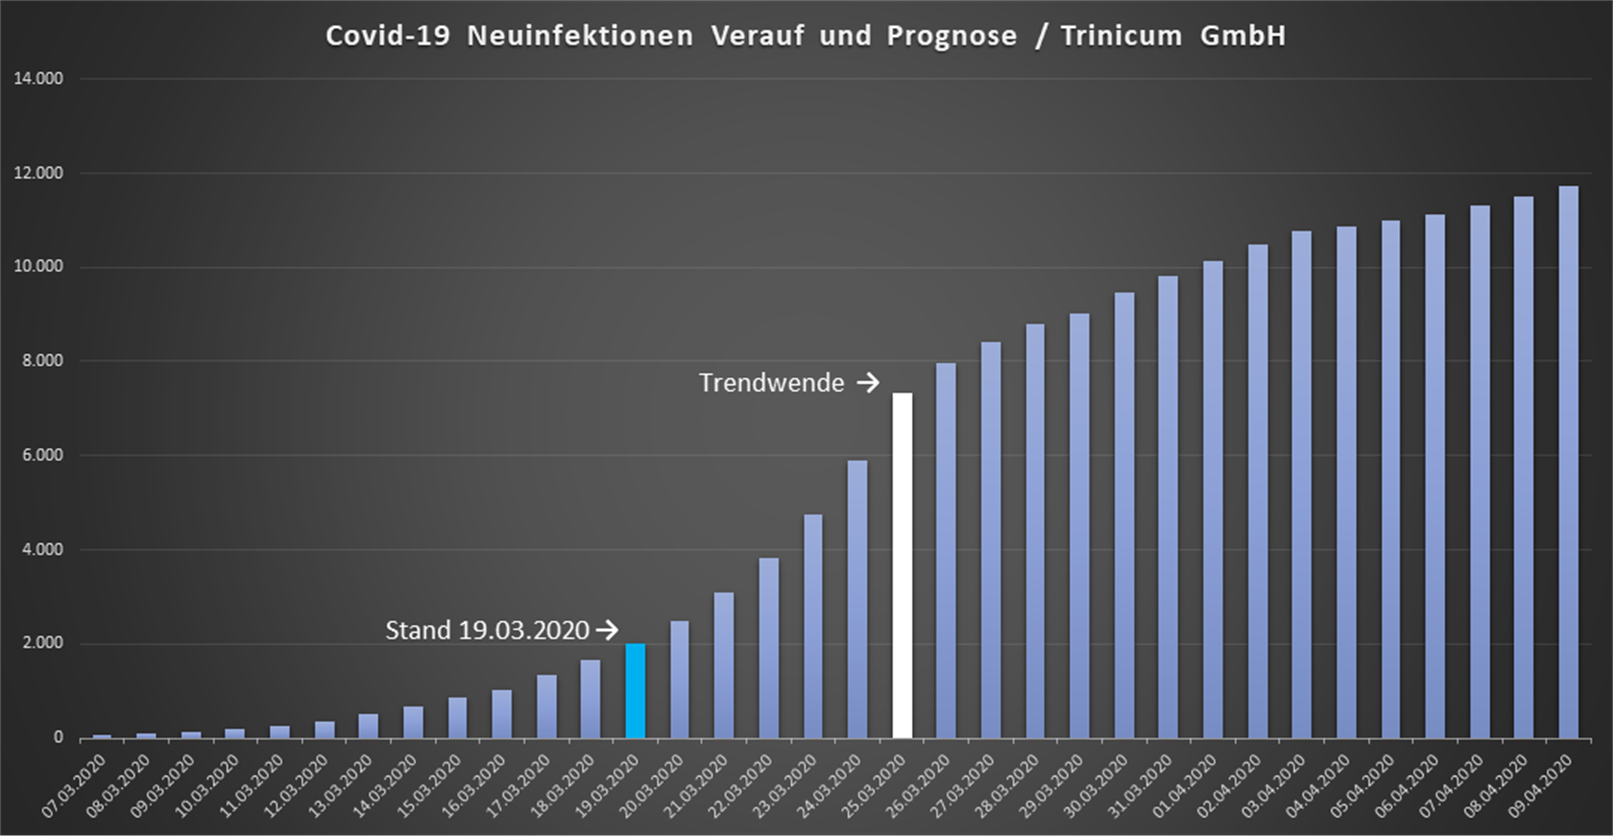 COVID-19 Neuinfektionen in Ö Verlauf und Prognose / Trinicum GmbH